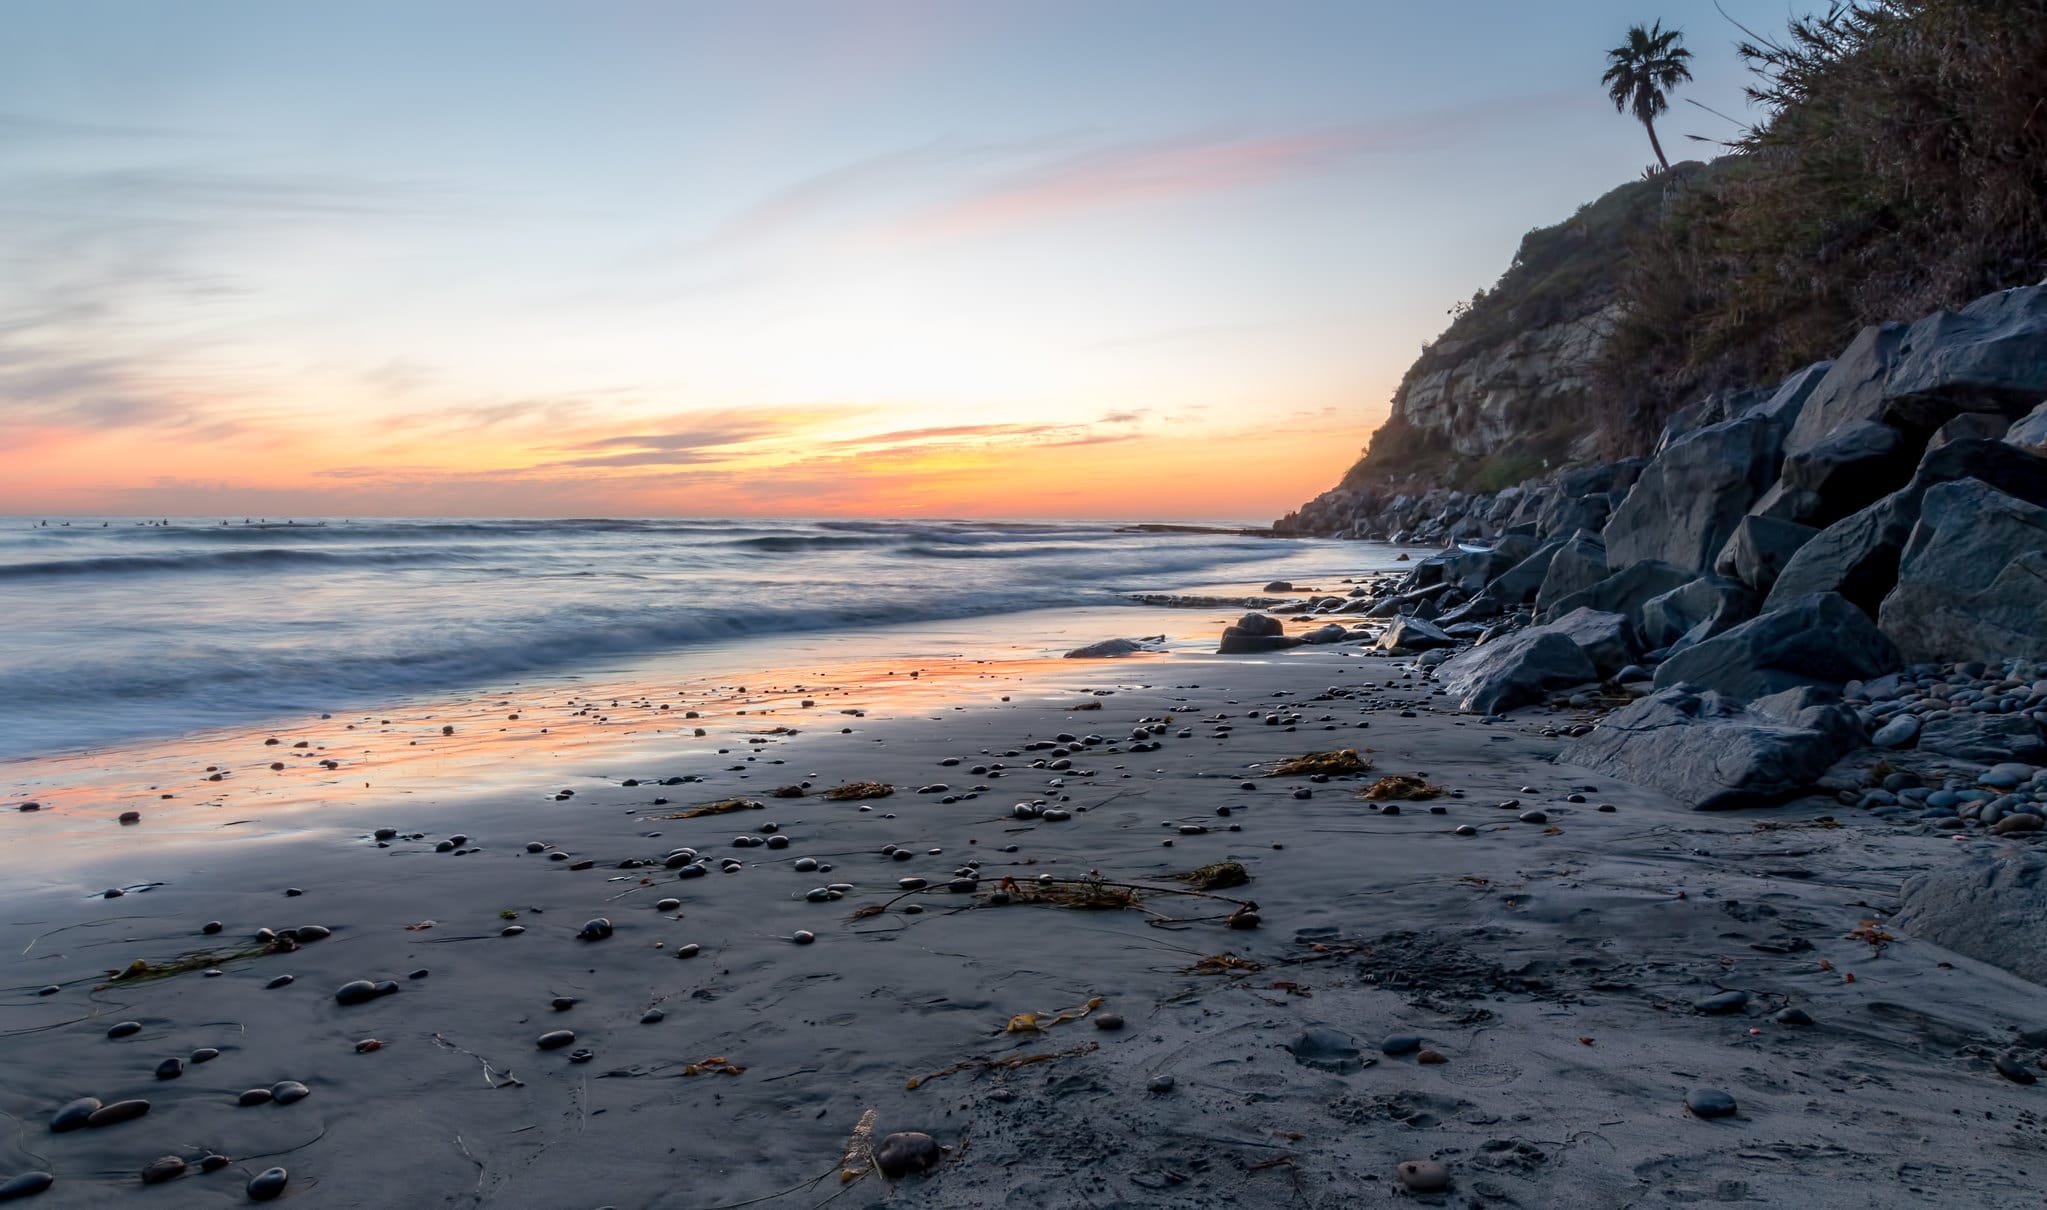 Image of Swami's Beach in Encinitas California at sunset